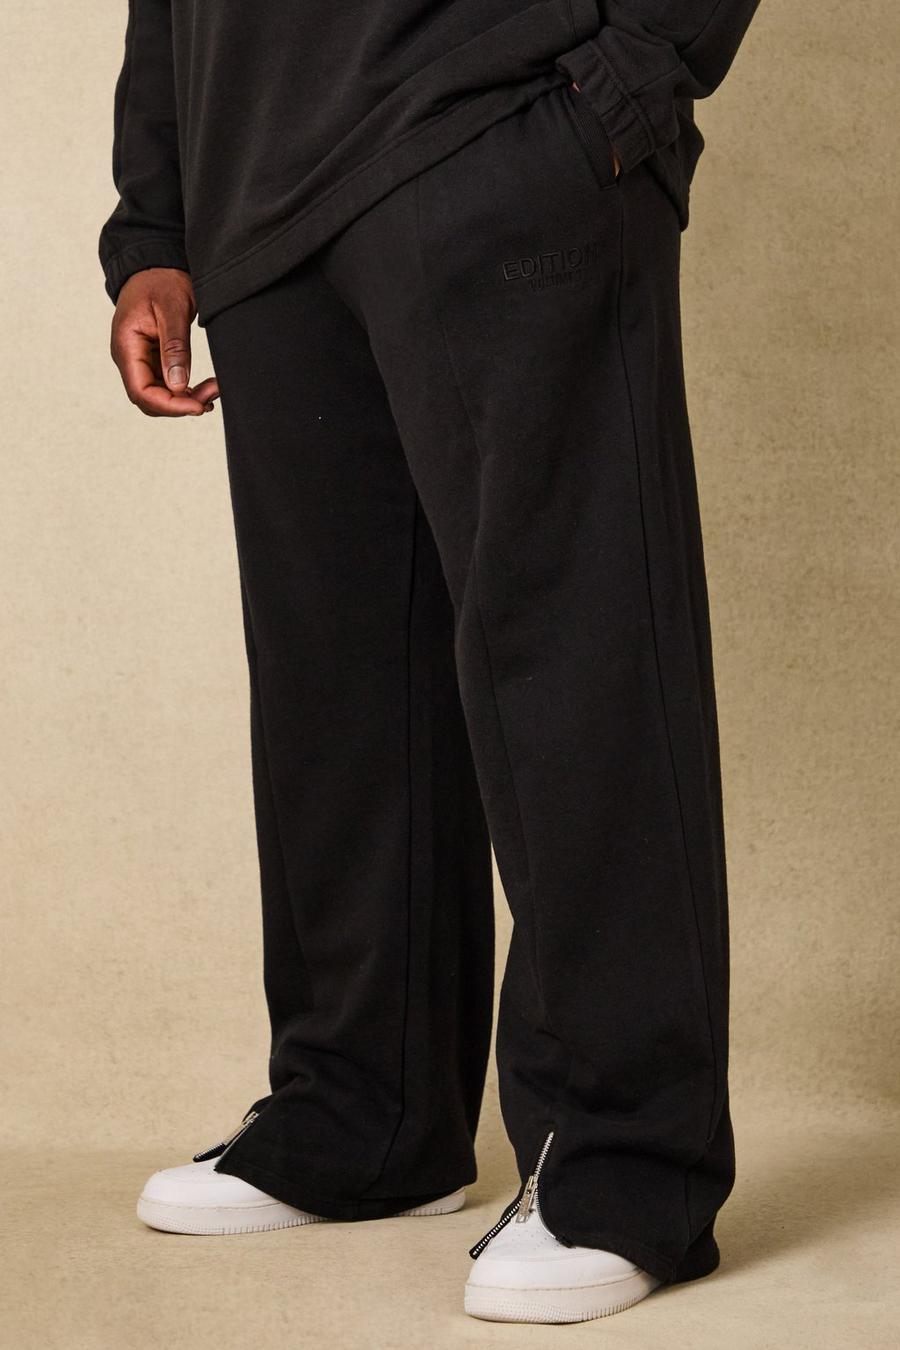 Pantaloni tuta pesanti Plus Size EDITION rilassati con spacco sul fondo, Black